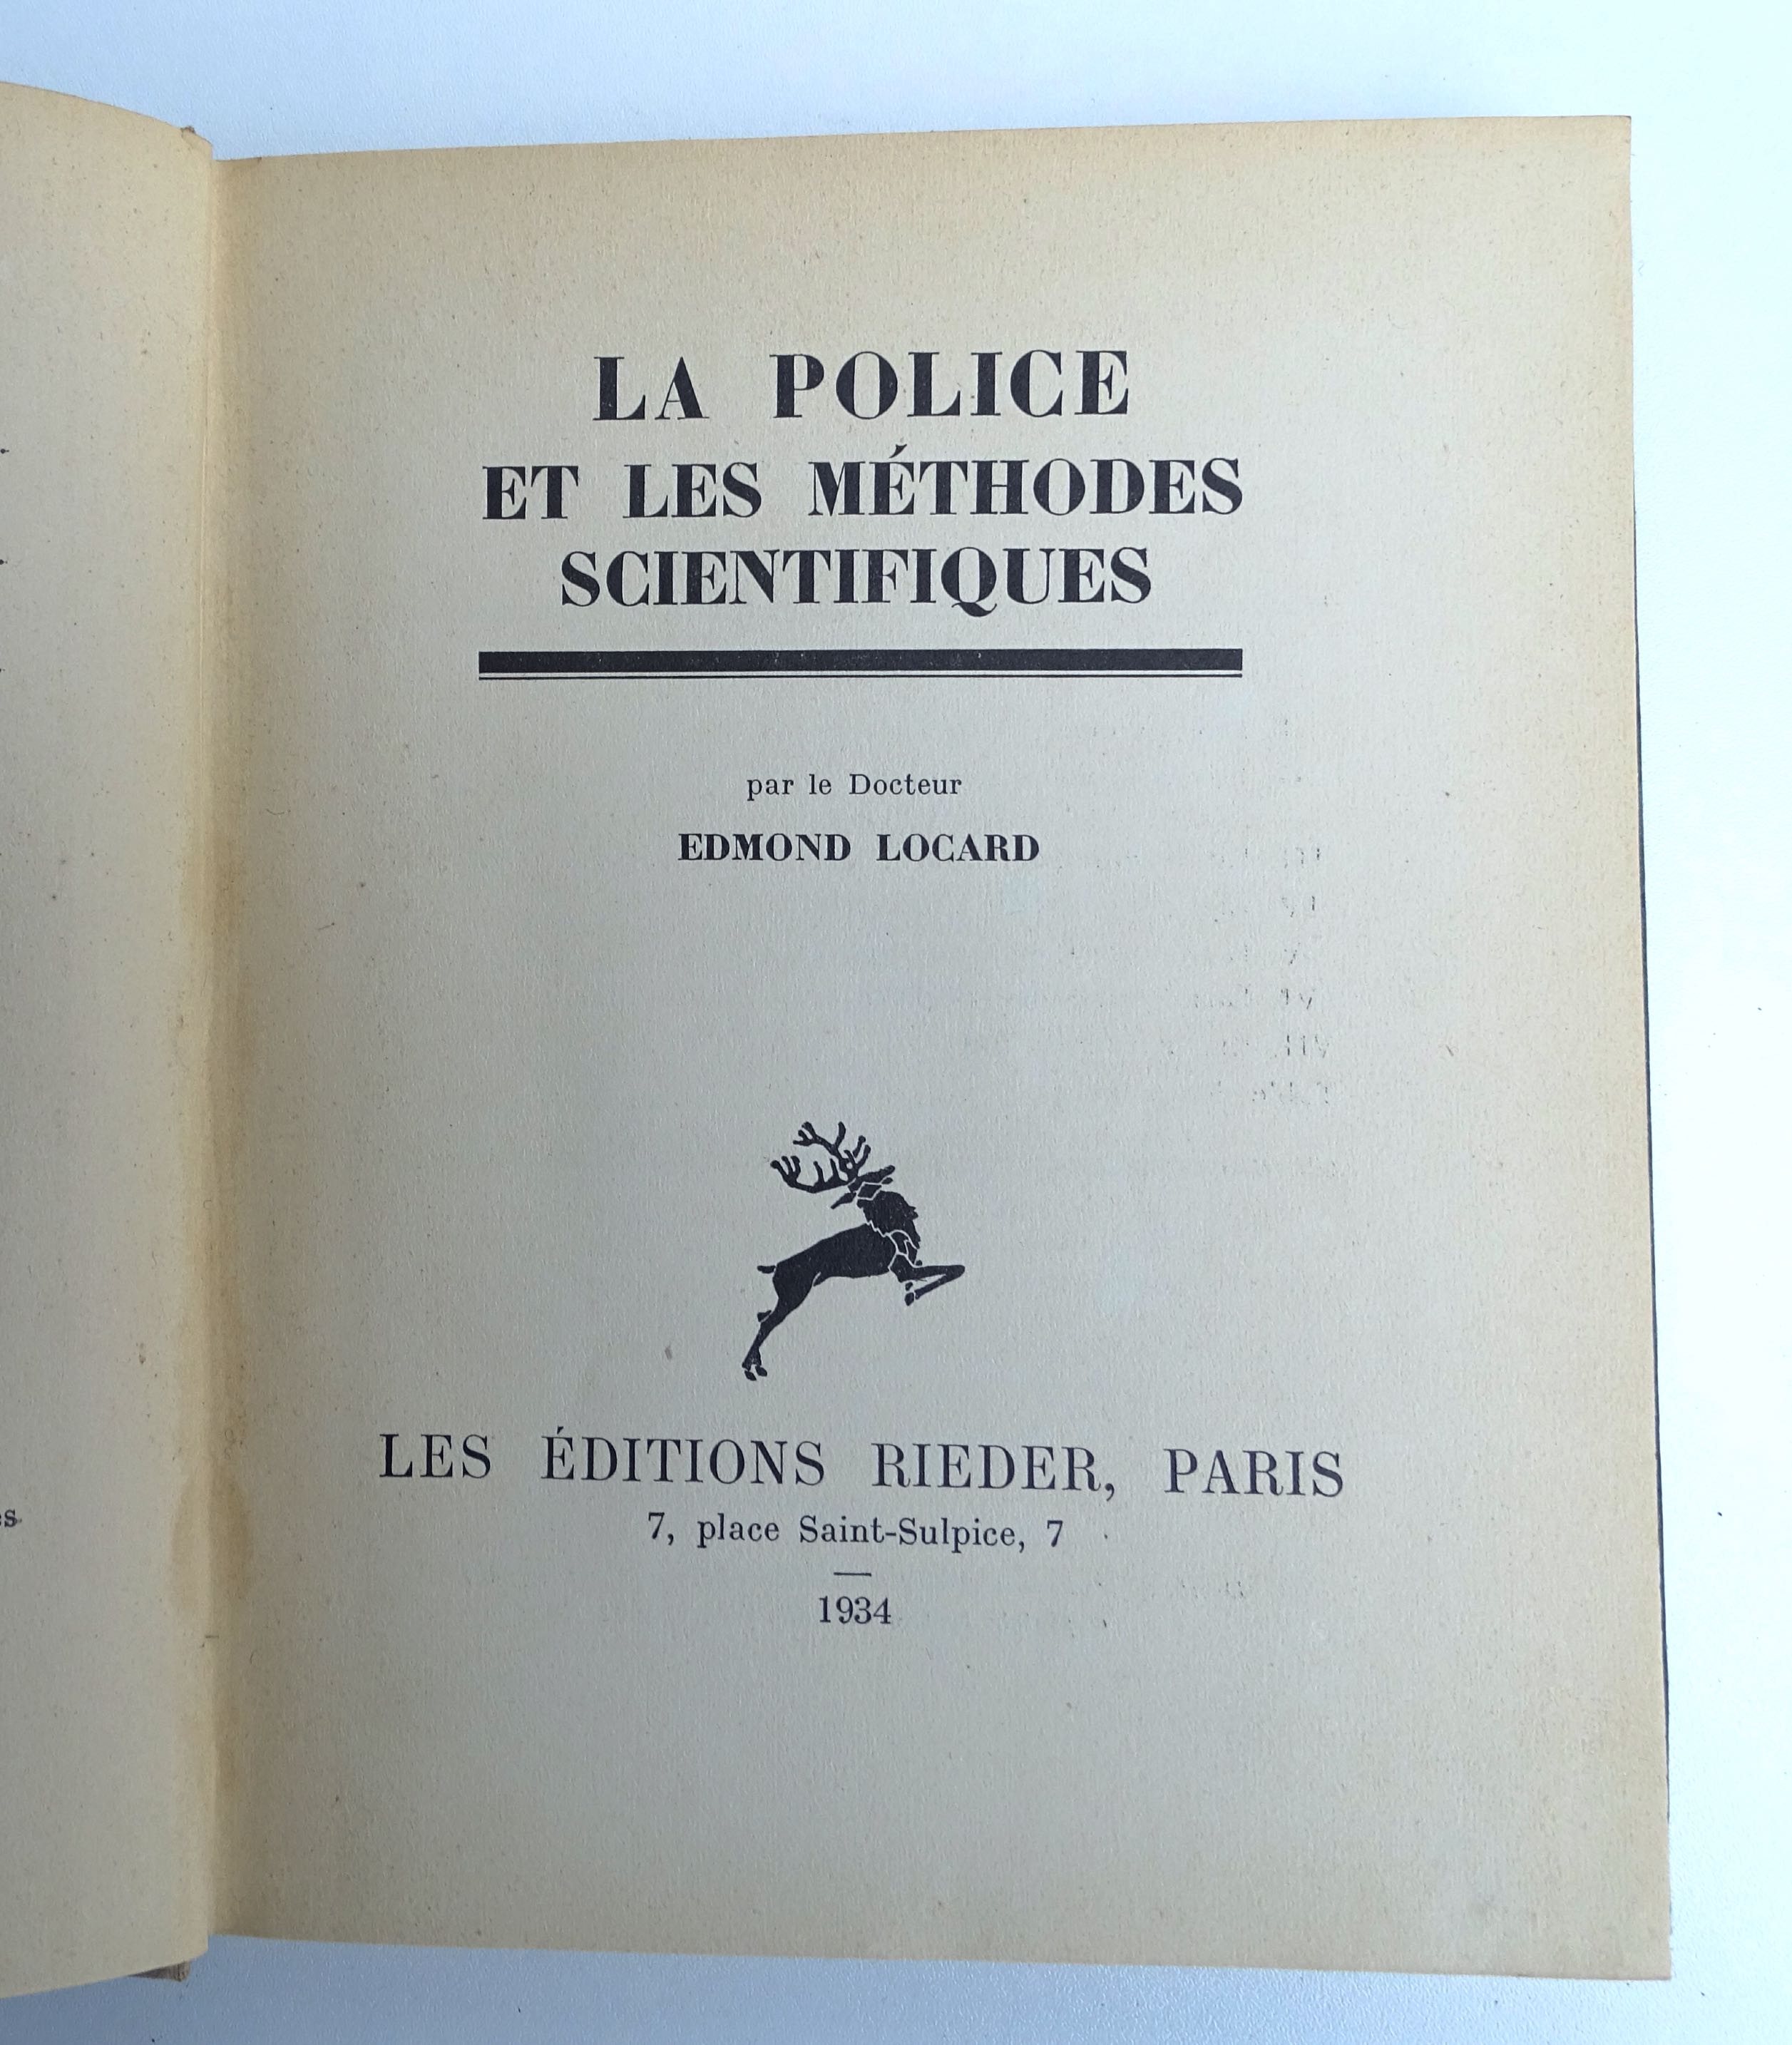 La Police et ses m&eacute;thodes scientifiques par Edmond Locard  1934